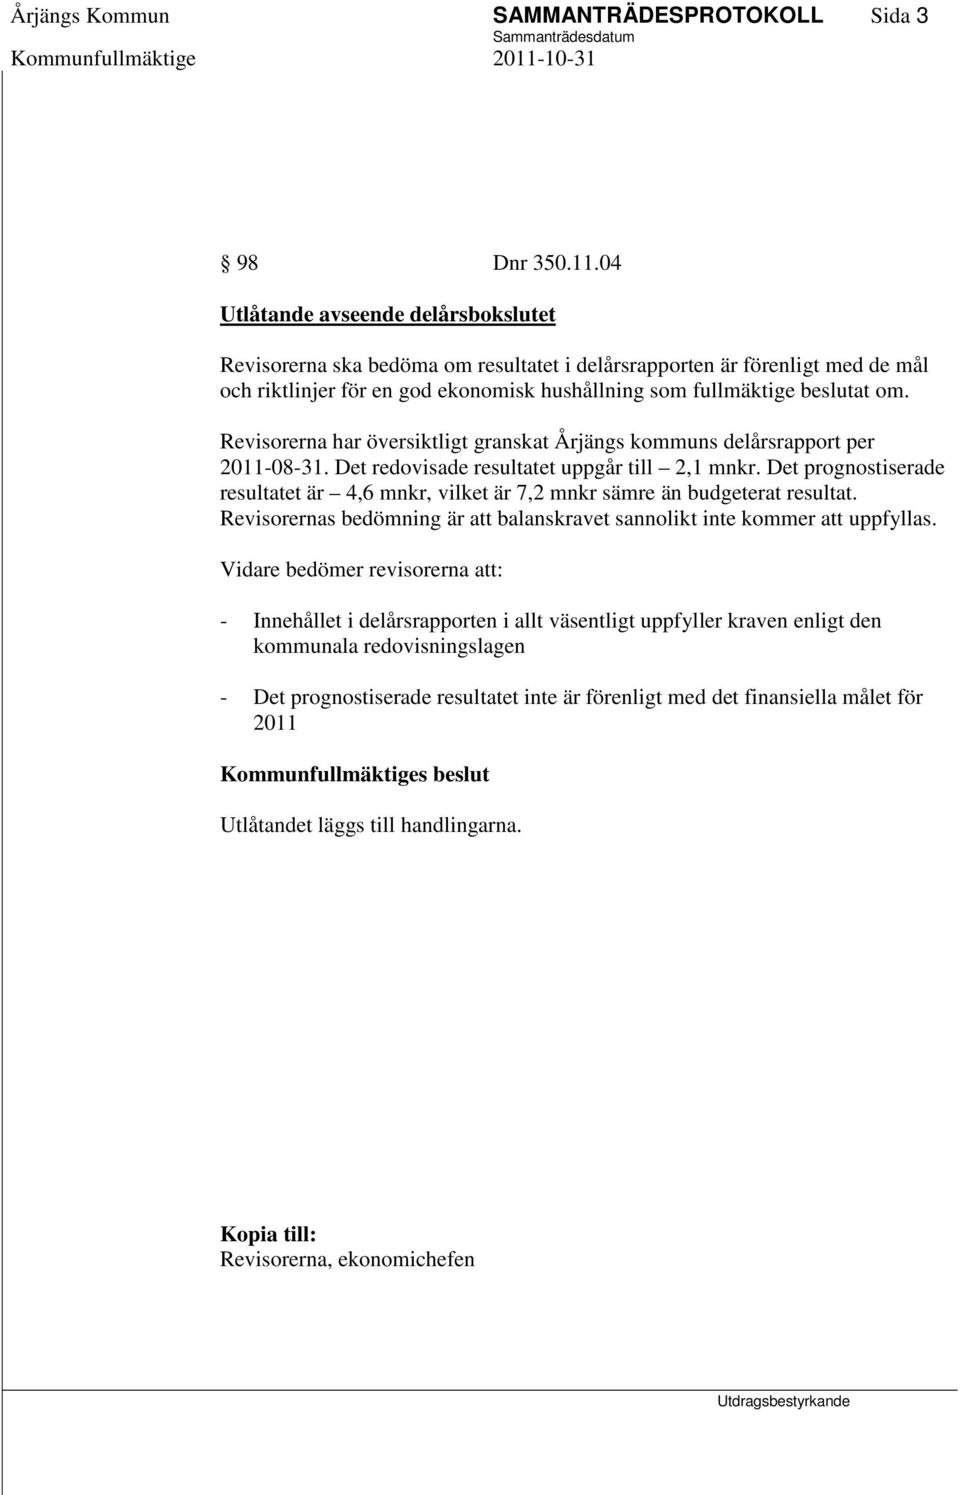 Revisorerna har översiktligt granskat Årjängs kommuns delårsrapport per 2011-08-31. Det redovisade resultatet uppgår till 2,1 mnkr.